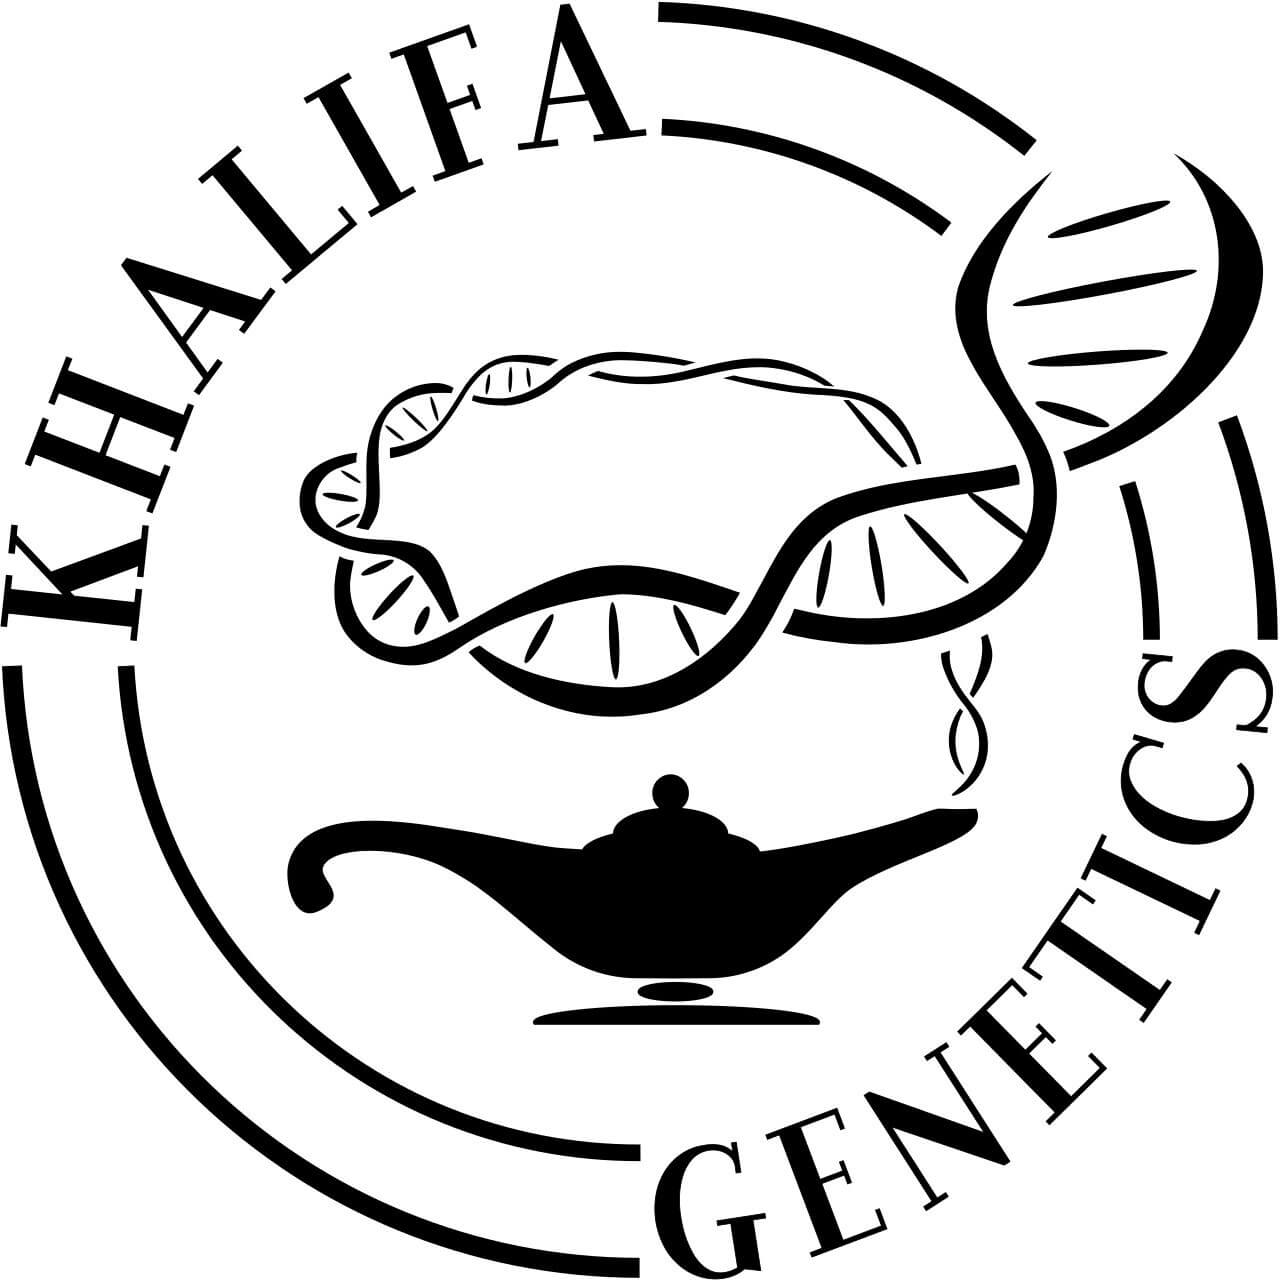 Khalifa Genetics, high quality traditional genetics